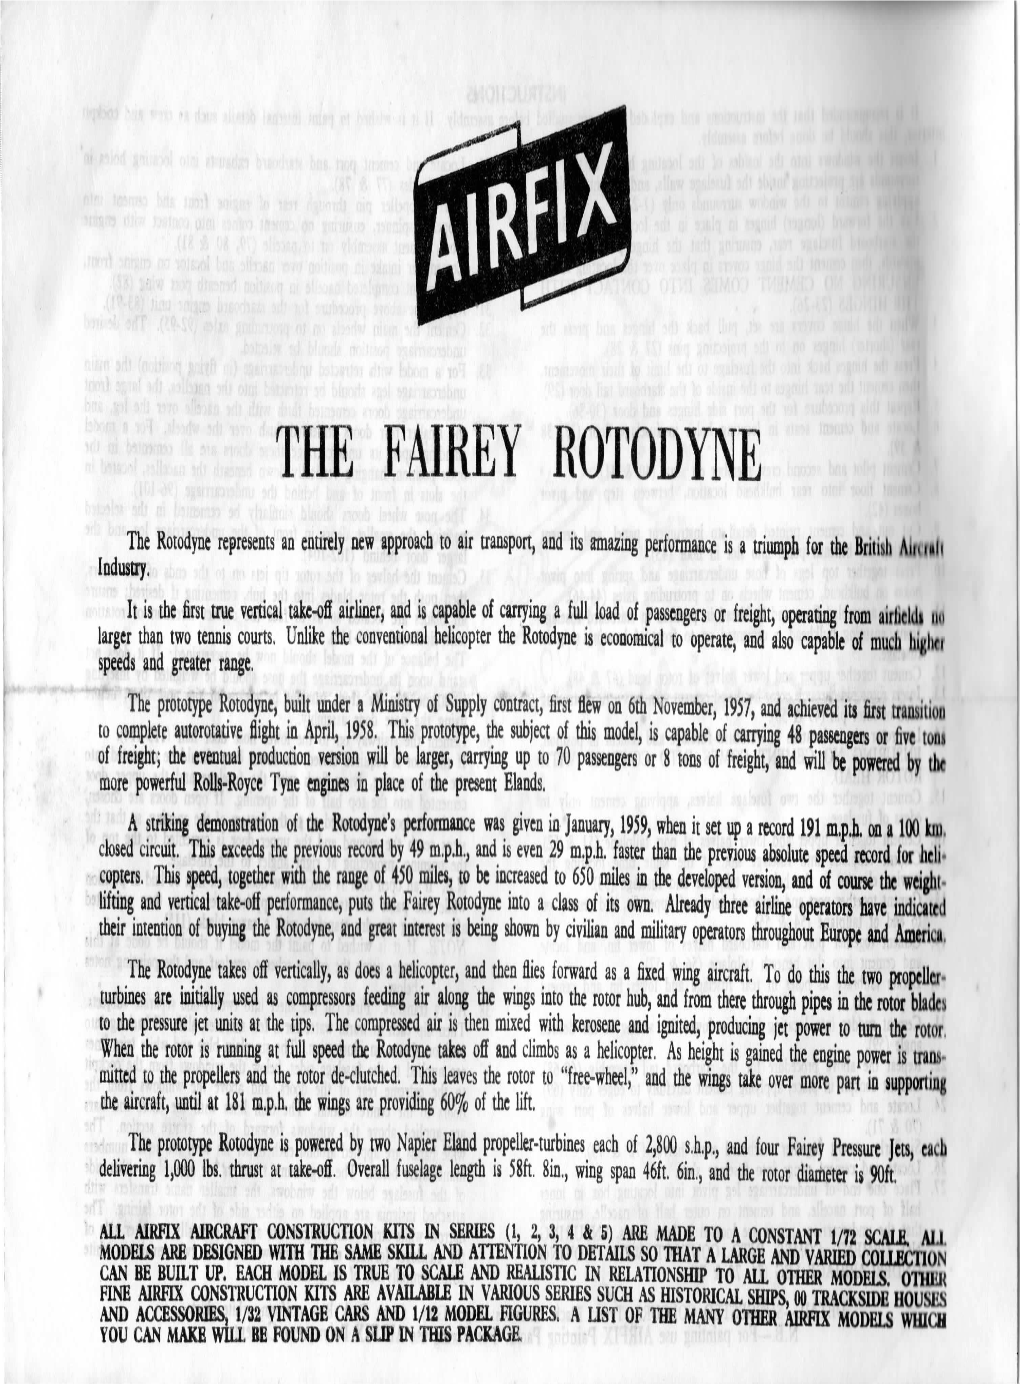 The Fairey Rotodyne